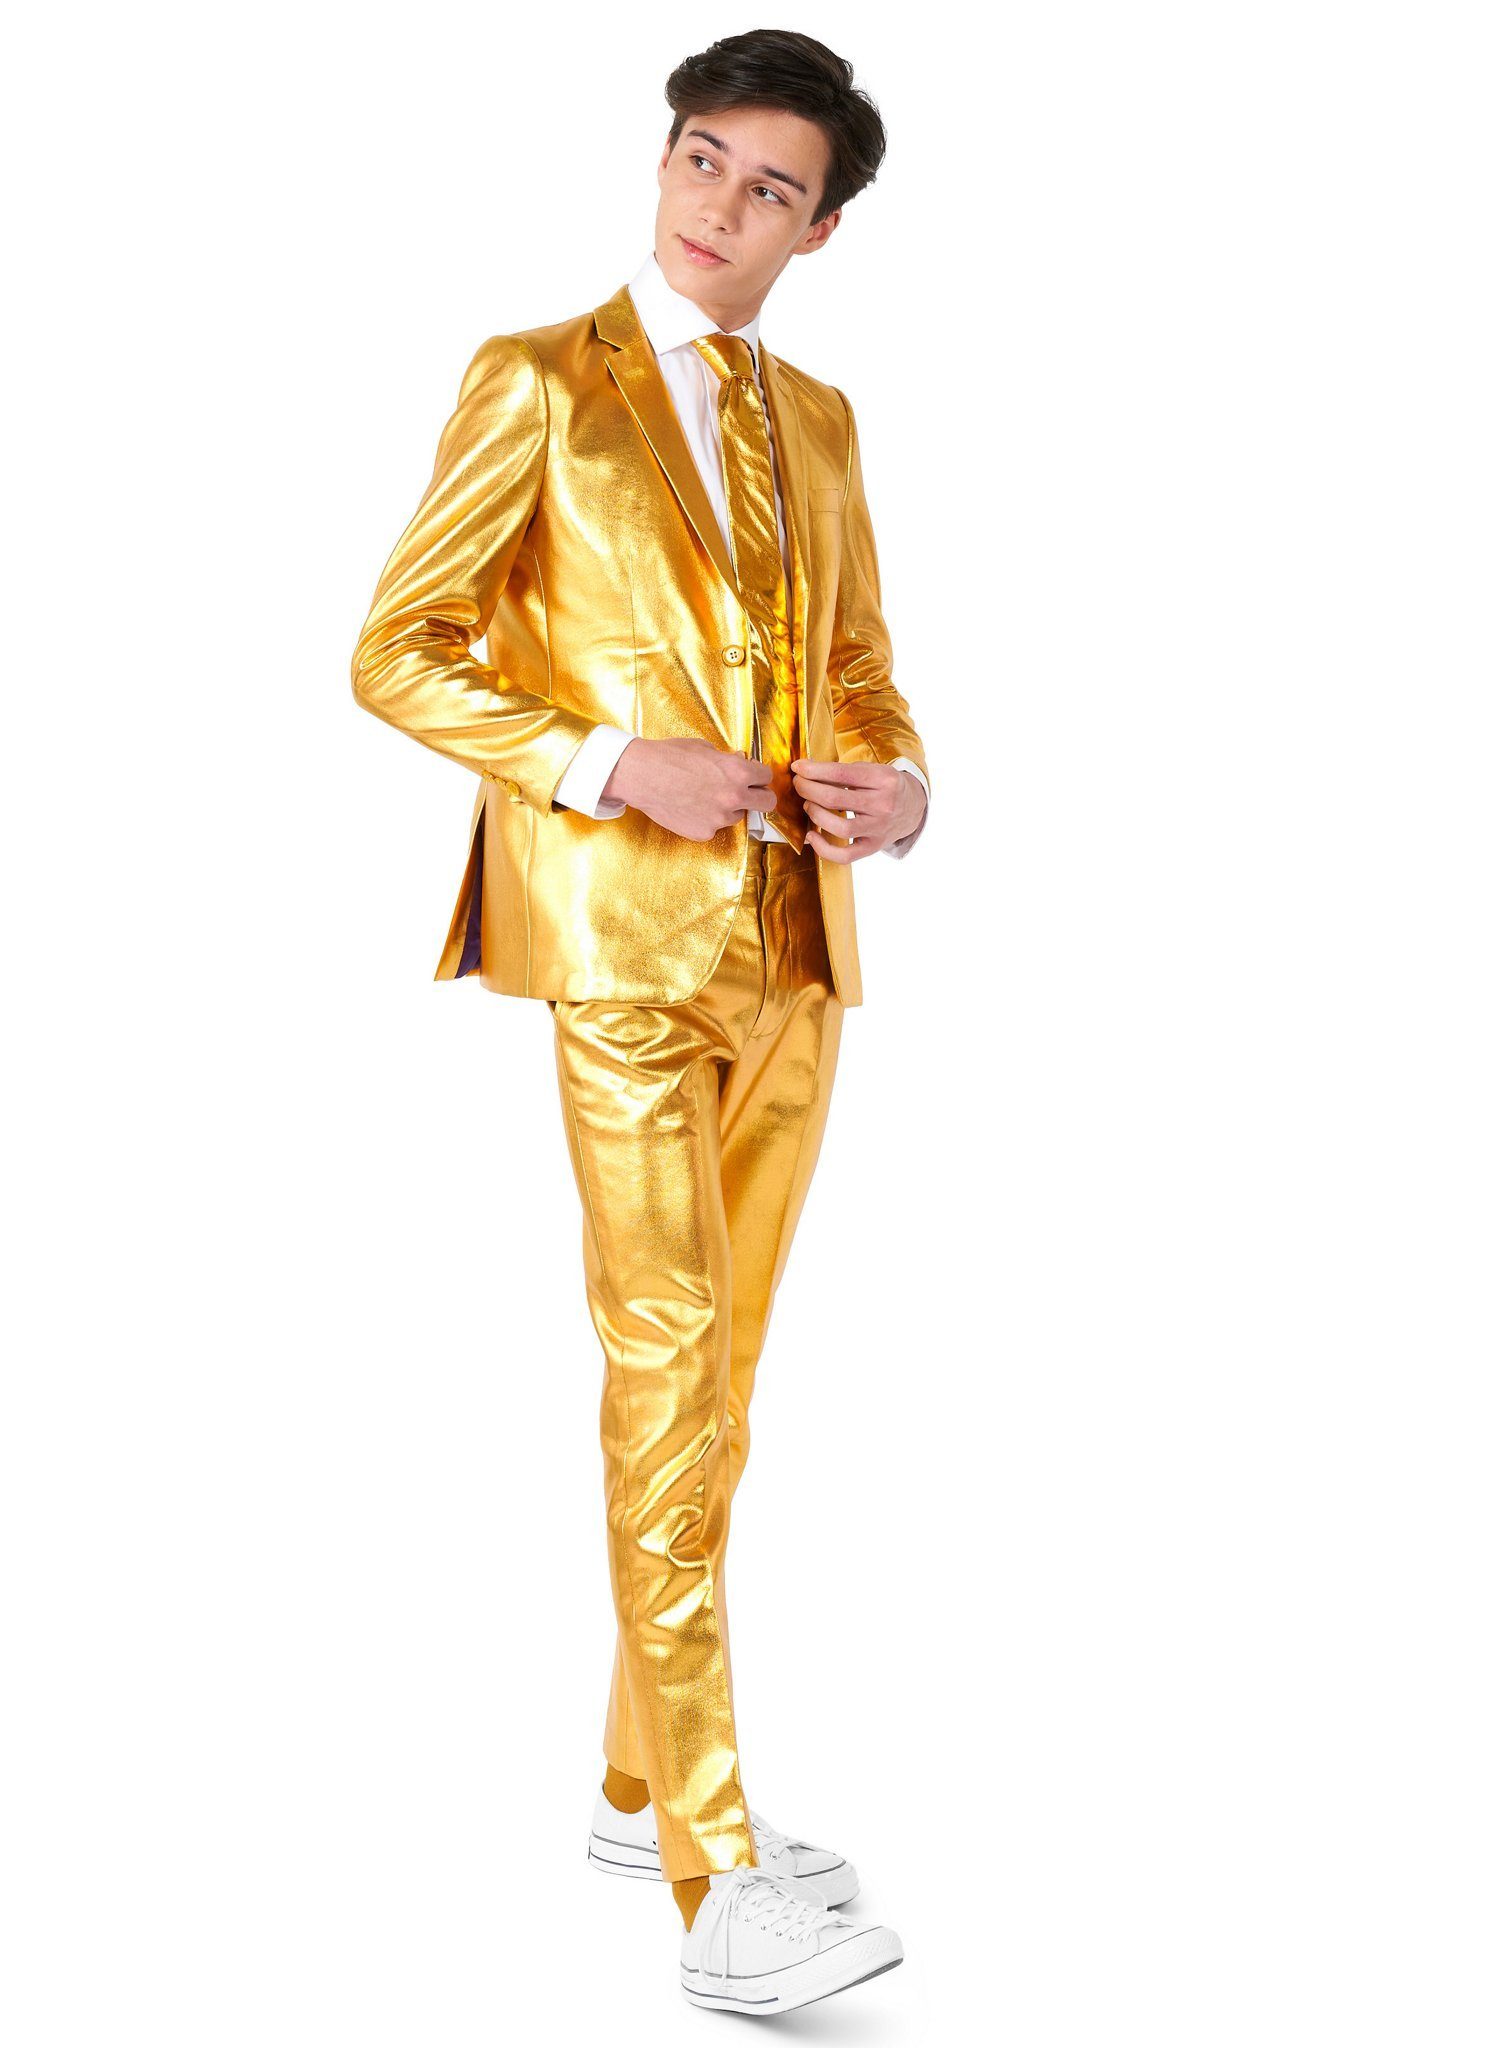 Opposuits Kinderanzug Teen Groovy Gold Anzug für Jugendliche Going for Gold: Bling-Bling zum Anziehen